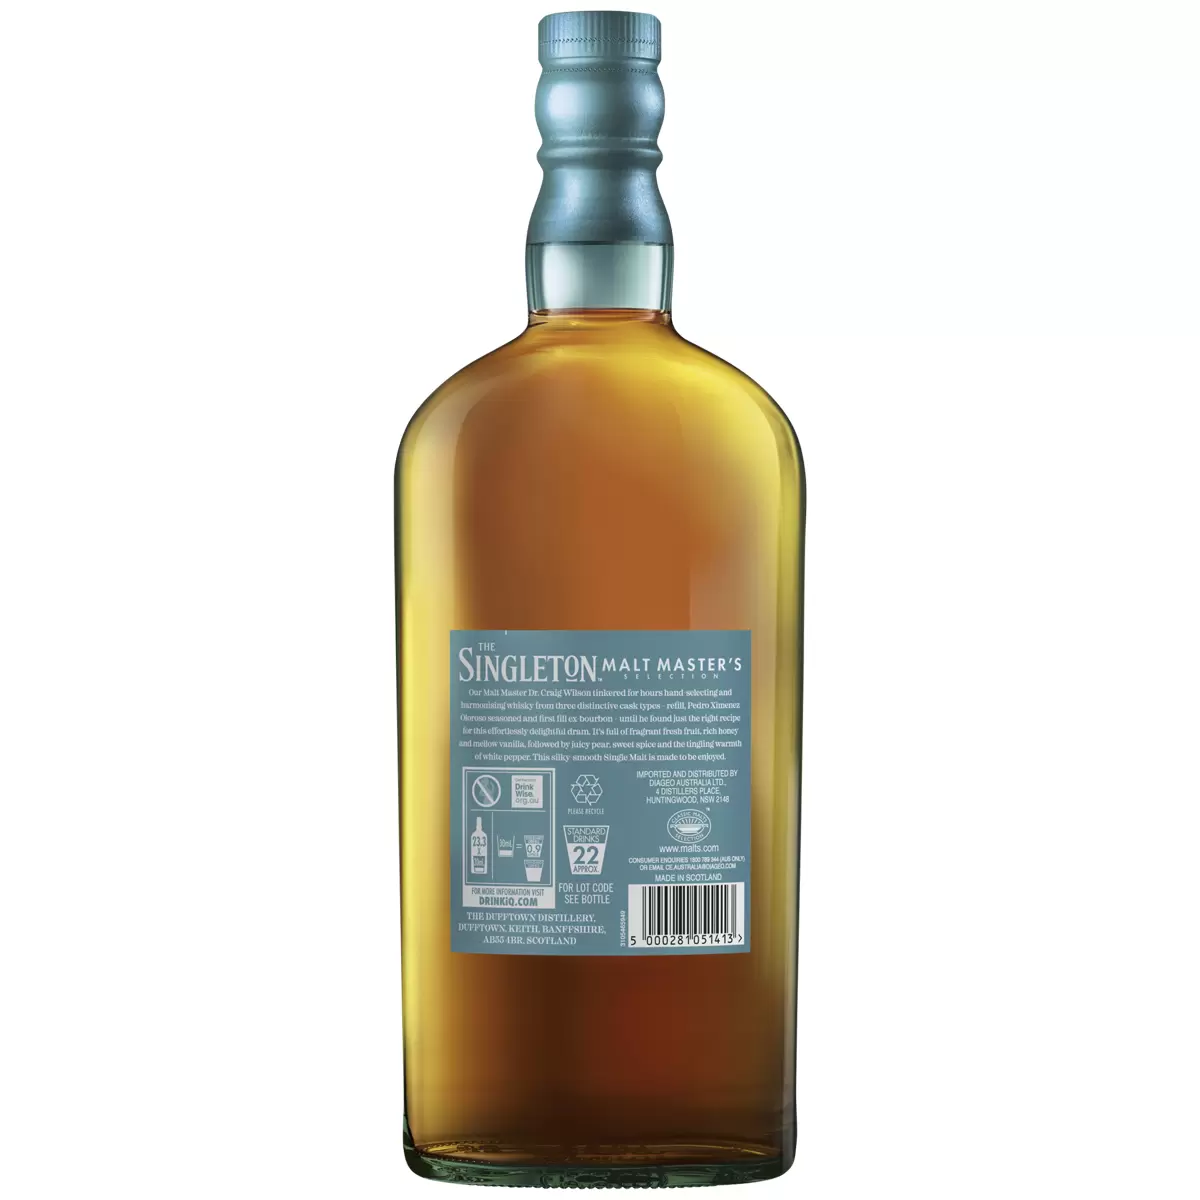 The Singleton Malt Master Scotch Whisky 700ml